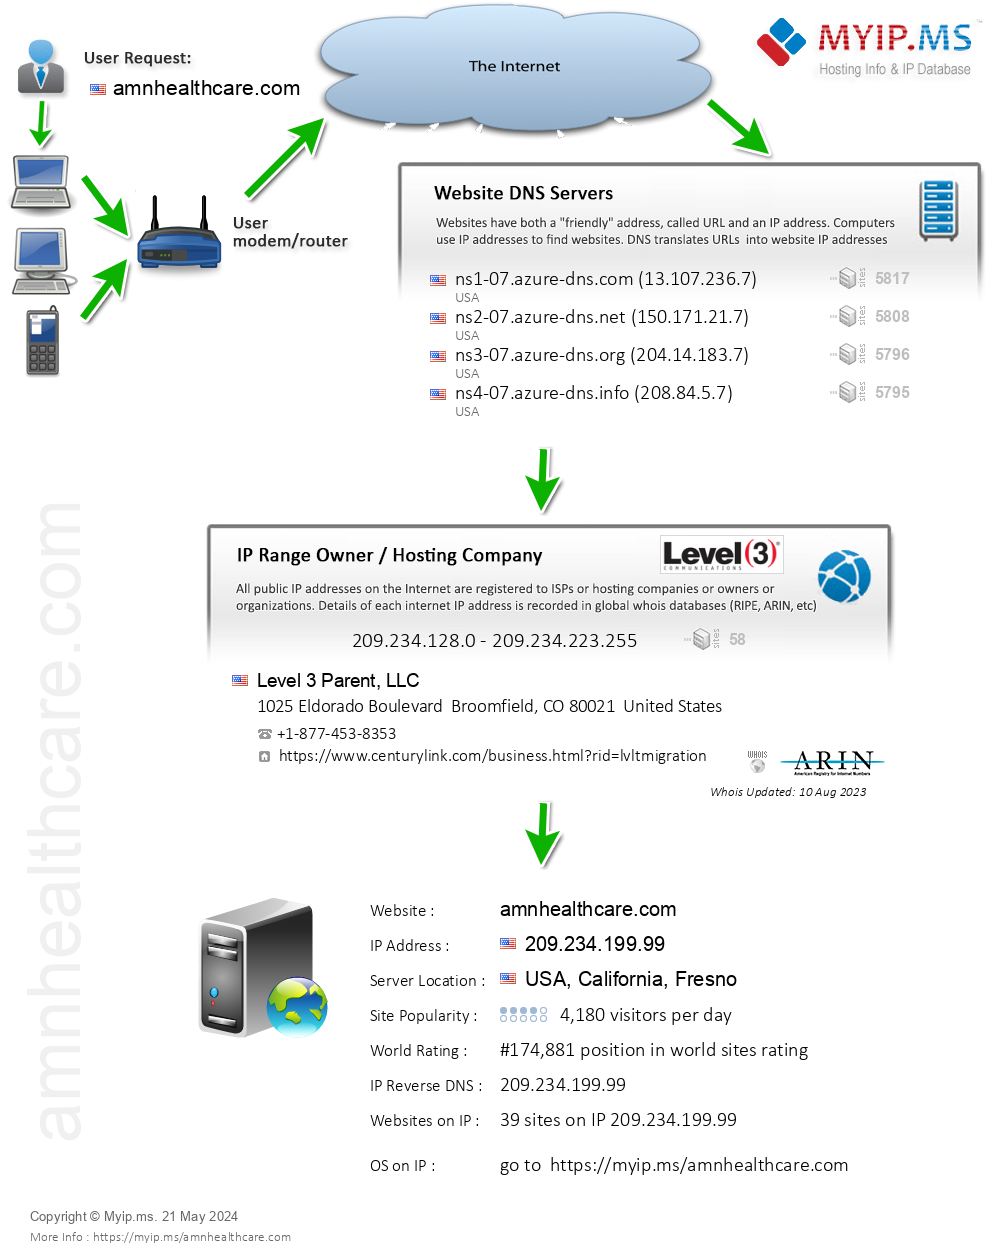 Amnhealthcare.com - Website Hosting Visual IP Diagram